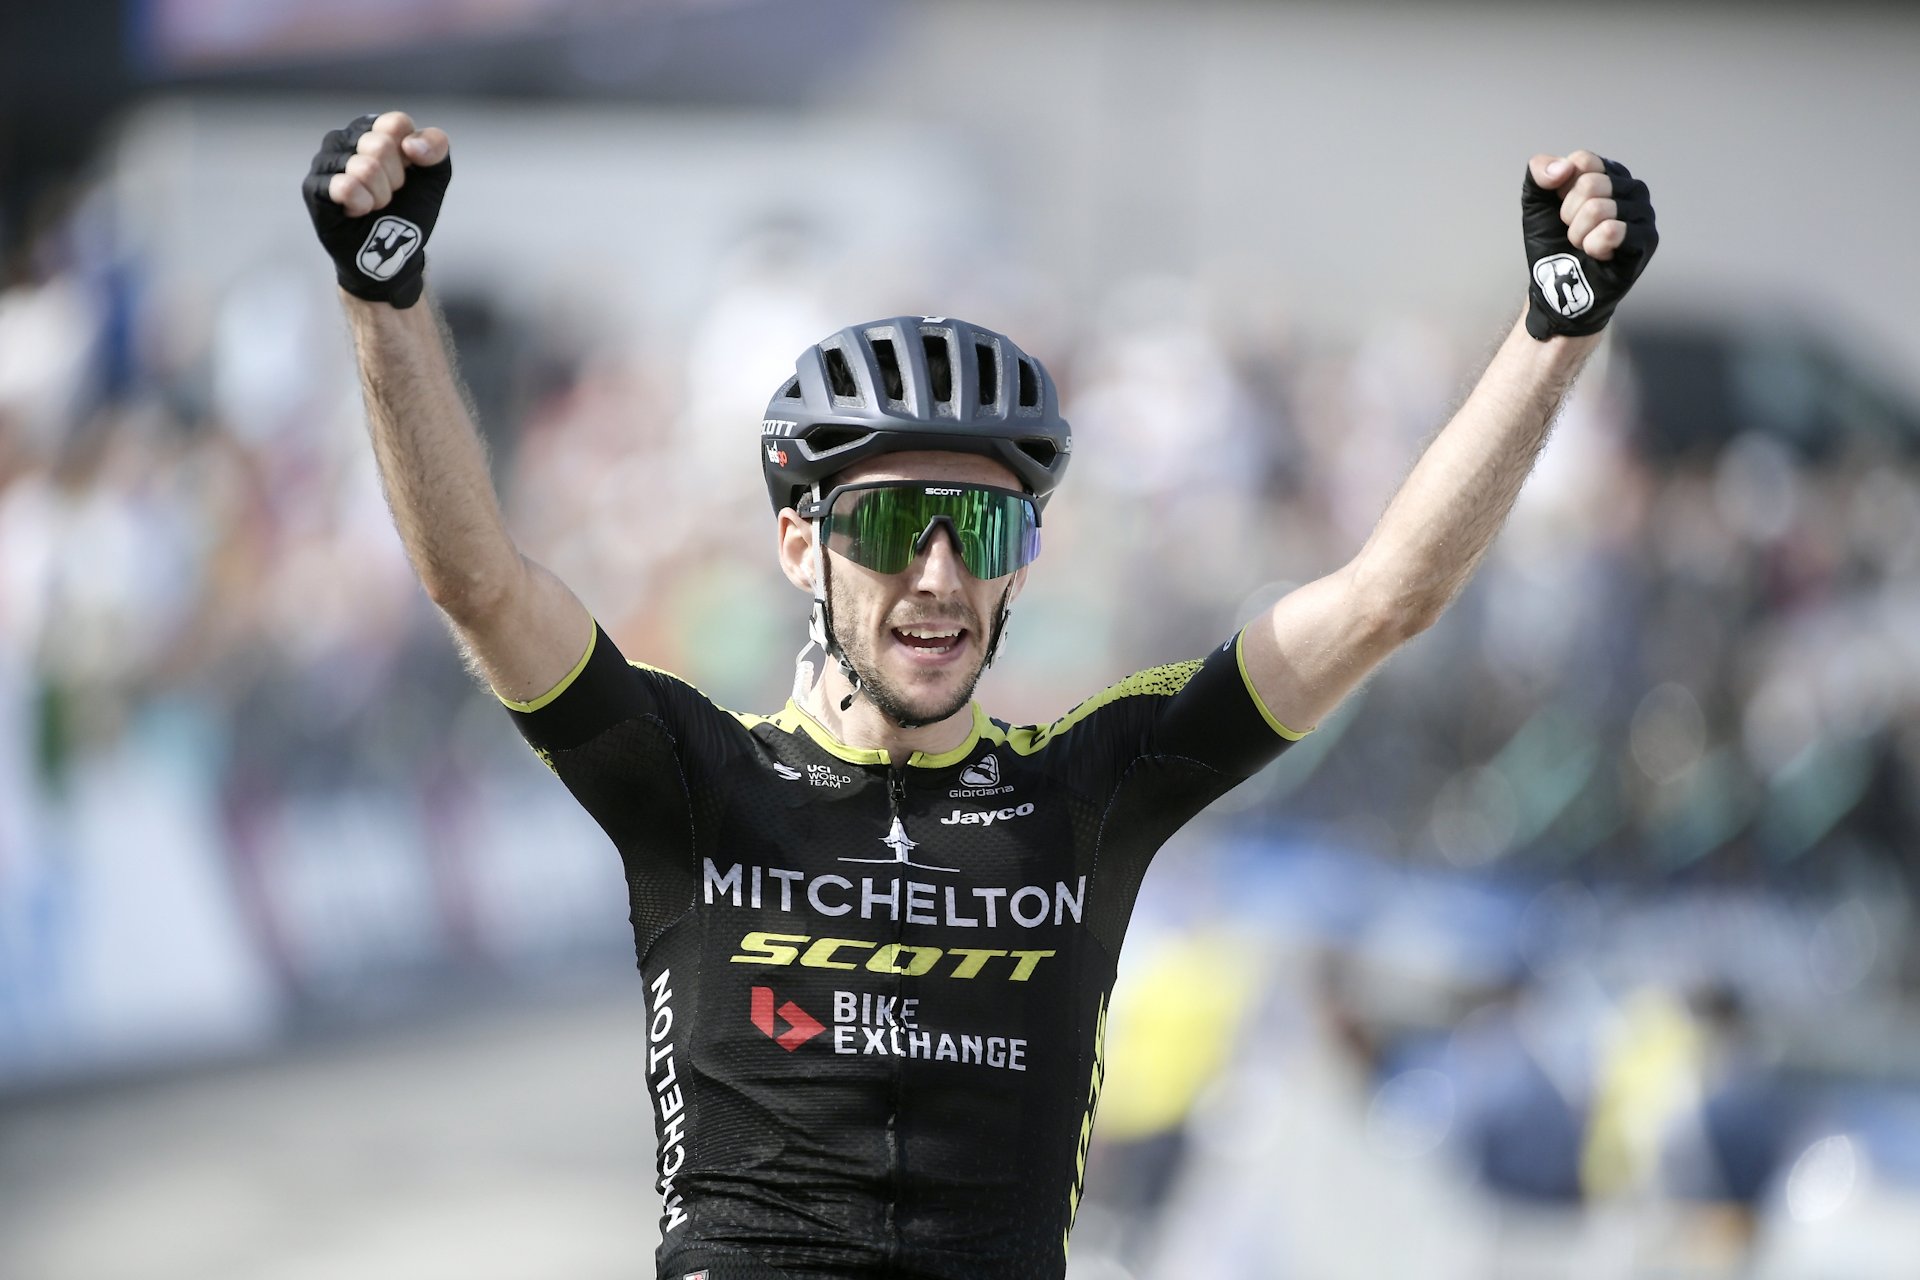 Tirreno-Adriatico 2020: etap 5. Simon Yates na solo, Majka wciąż wiceliderem